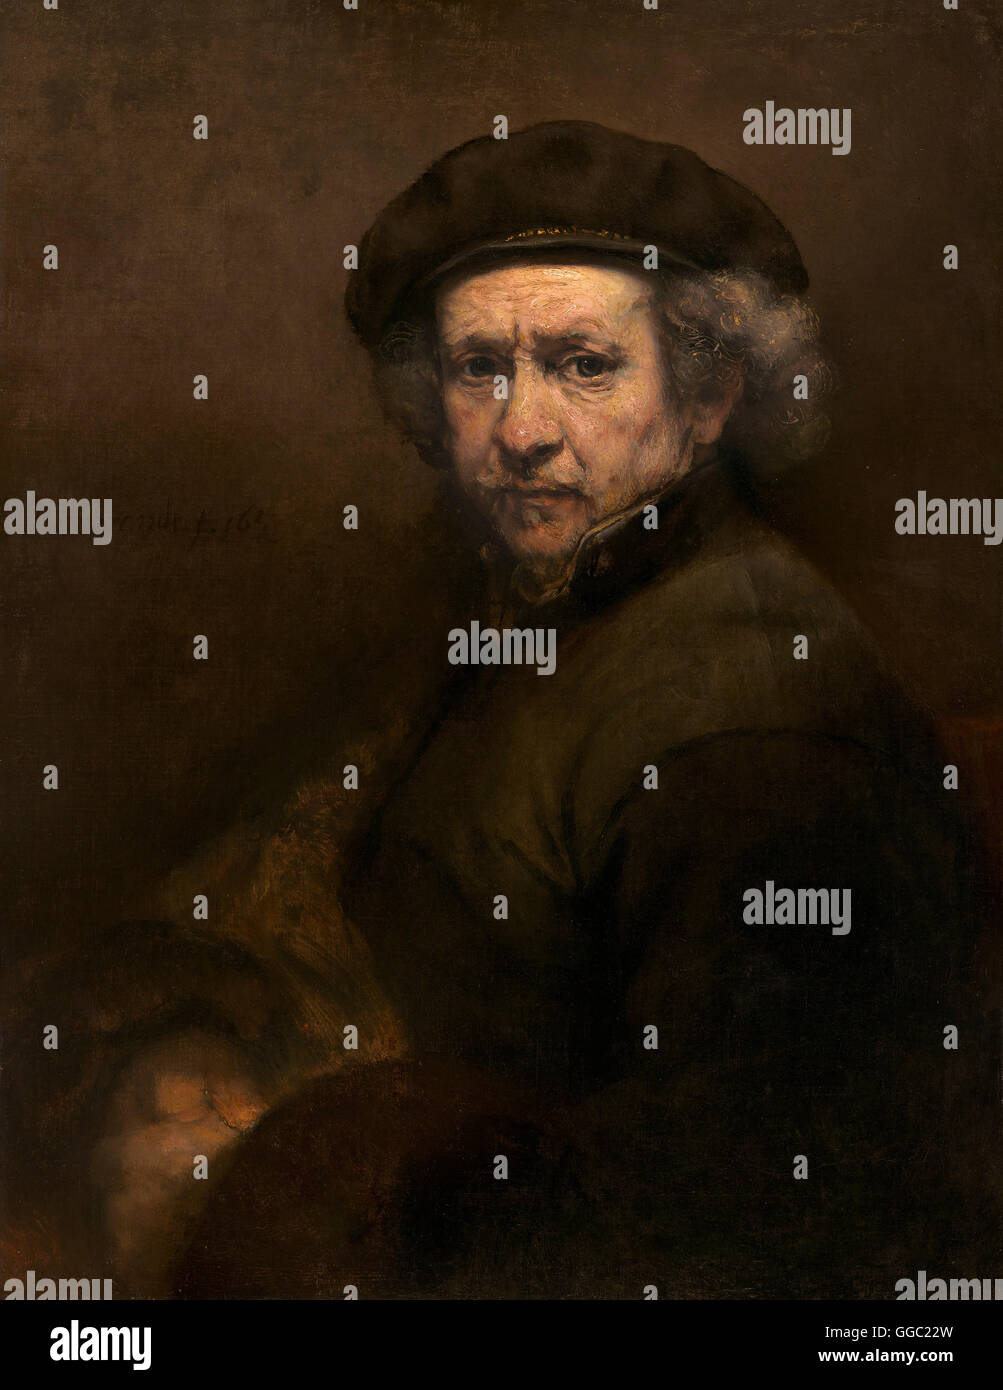 Self-Portrait by Rembrandt van Rijn Stock Photo